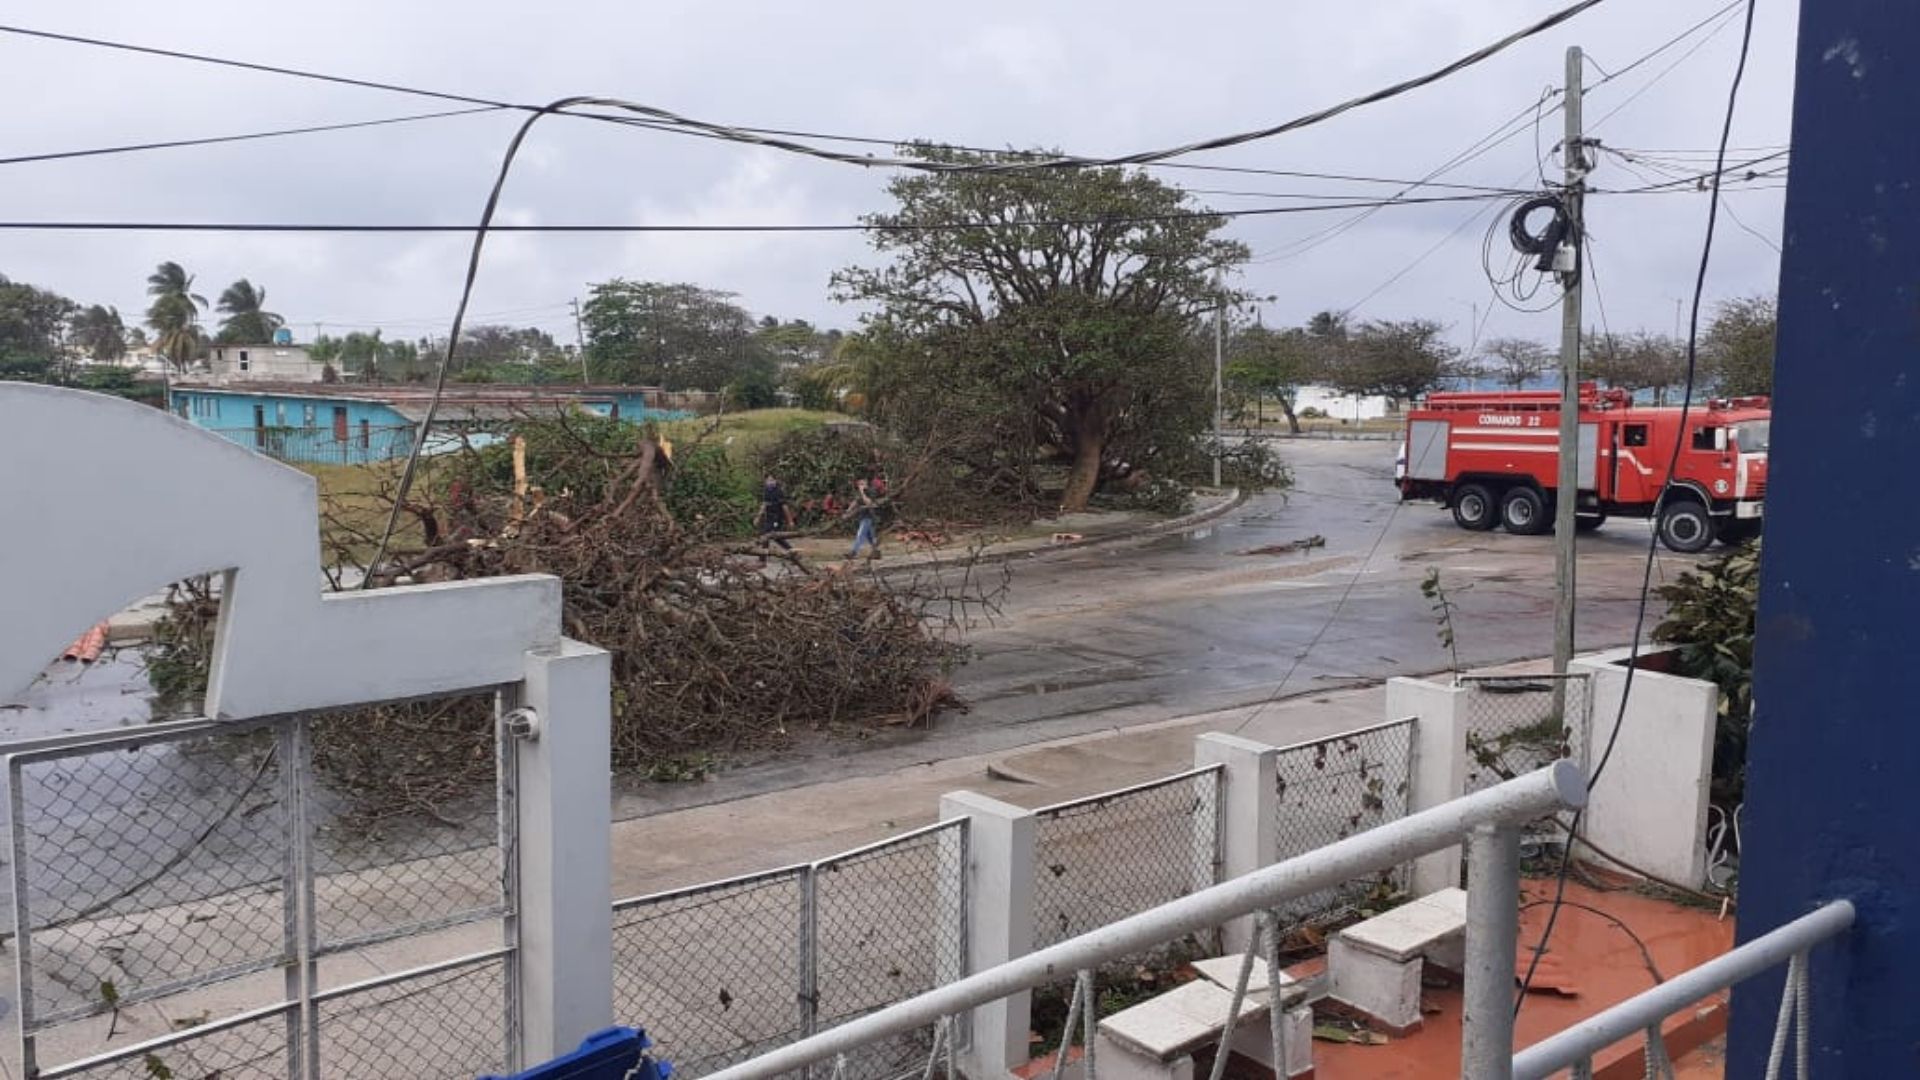 La delegada del barrio, Beatriz Moro Martínez, informó que el fenómeno meteorológico no causó daños en las personas, pero se reportan dos viviendas con afectaciones